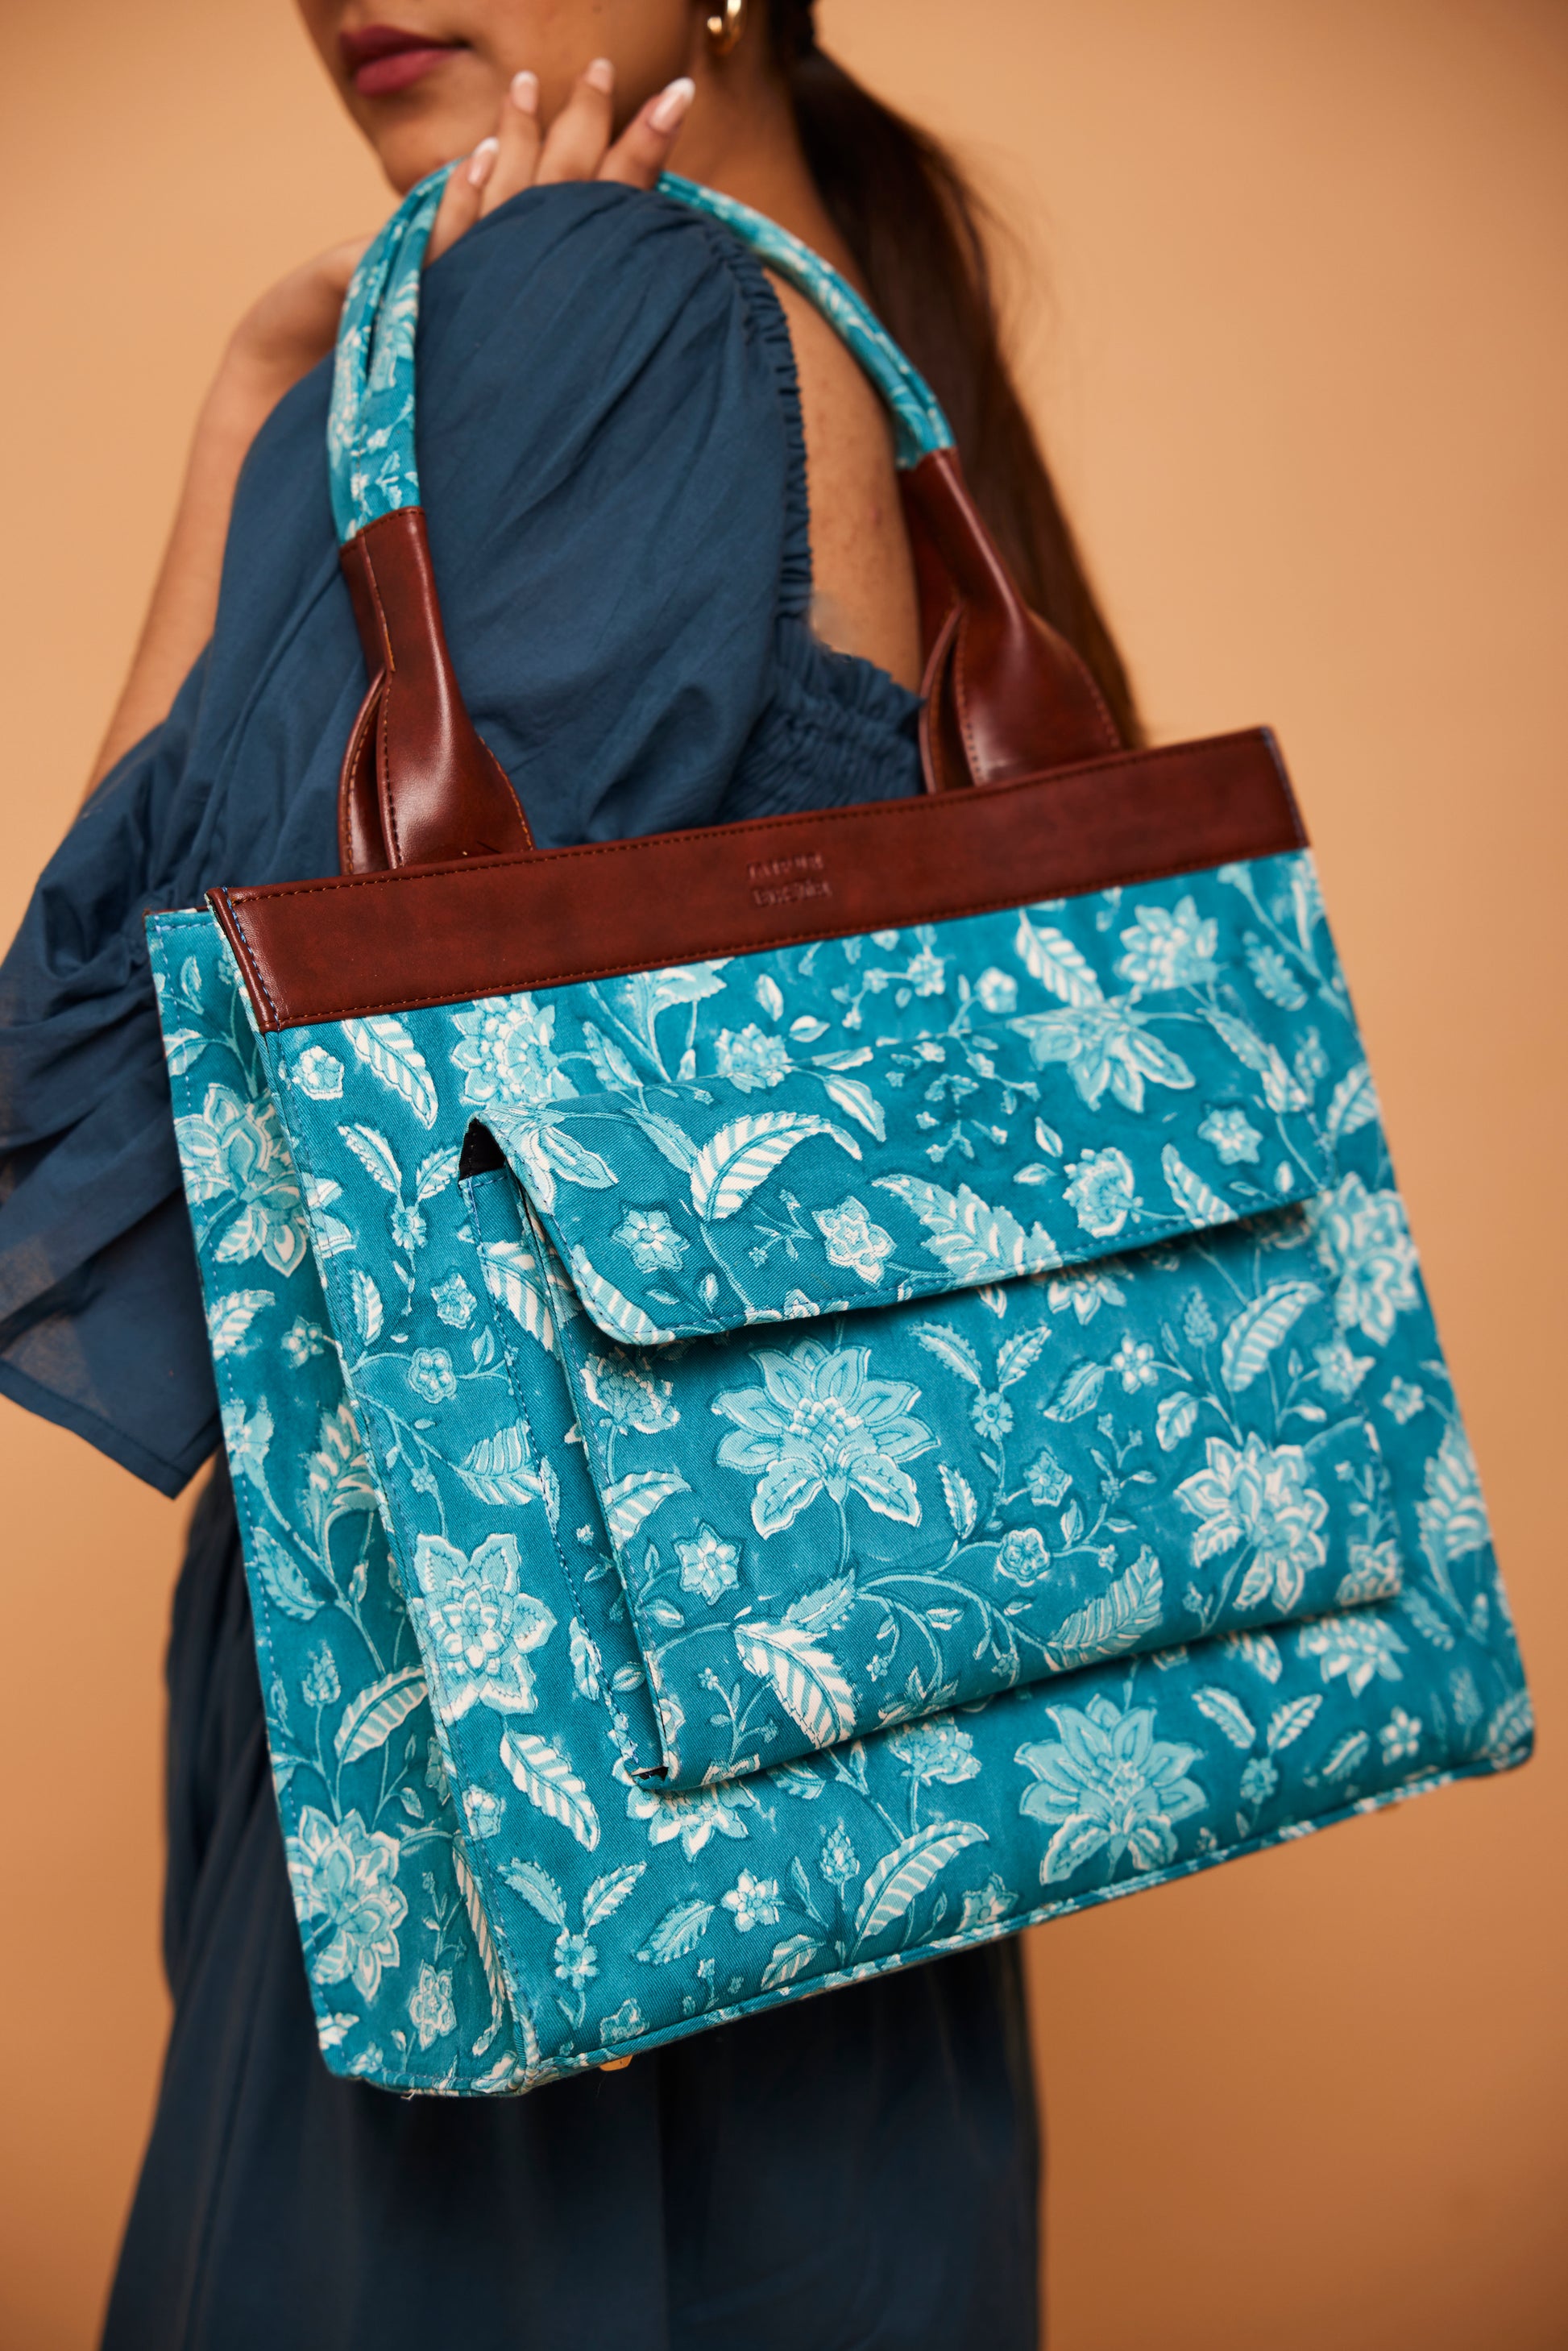 Aqua Blue Classic Tote Bag